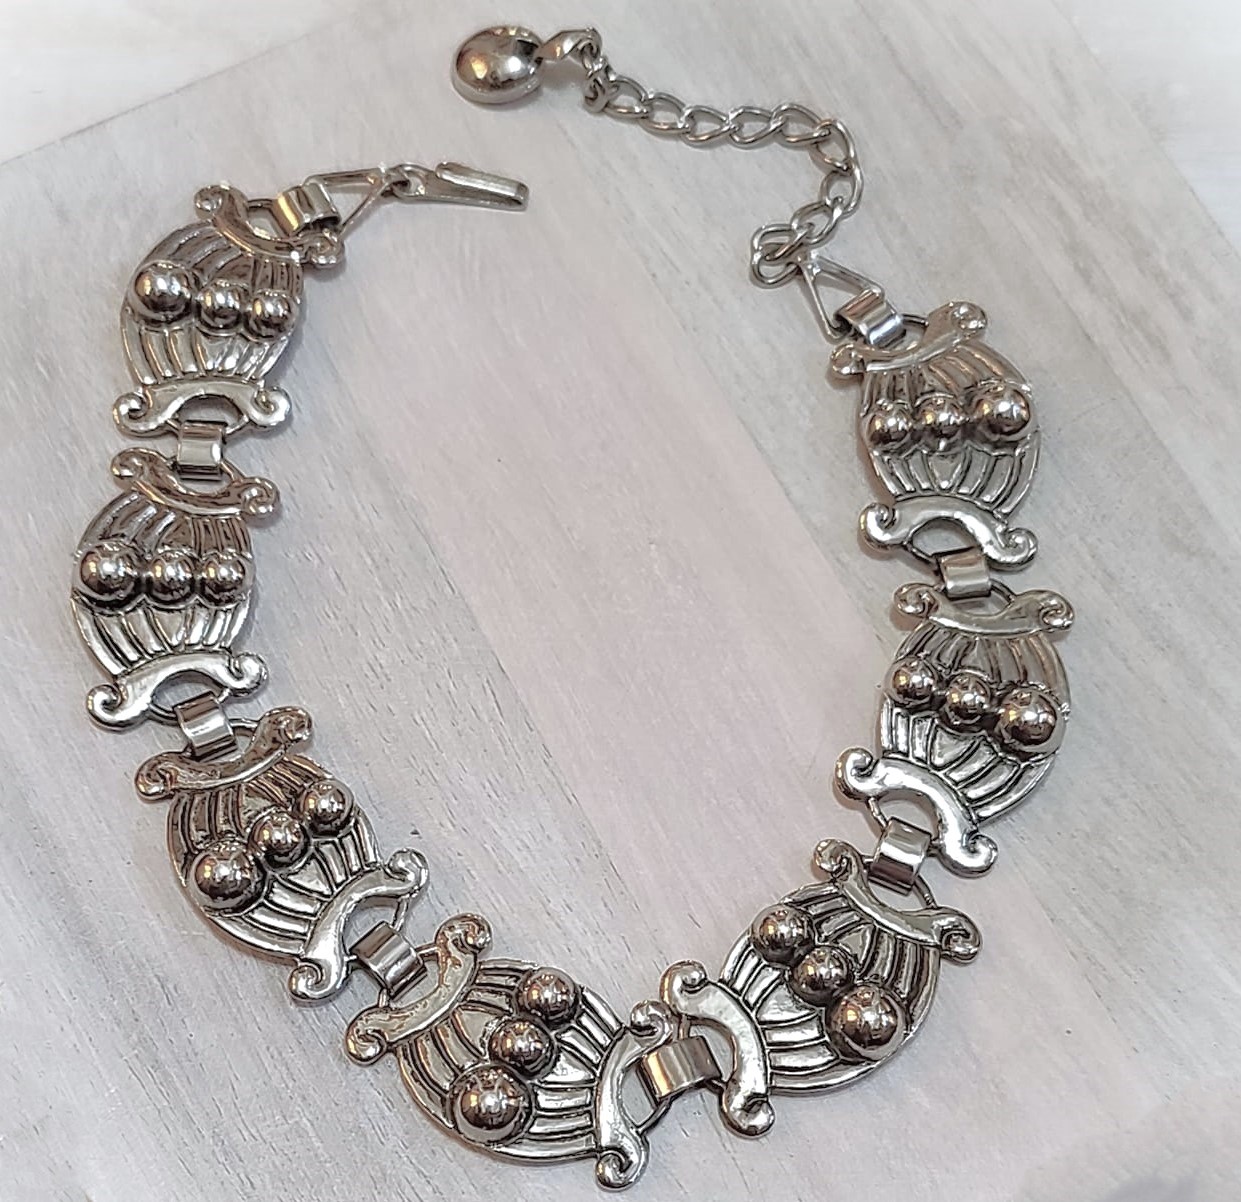 Shepherds hook silver alloy vintage choker necklace